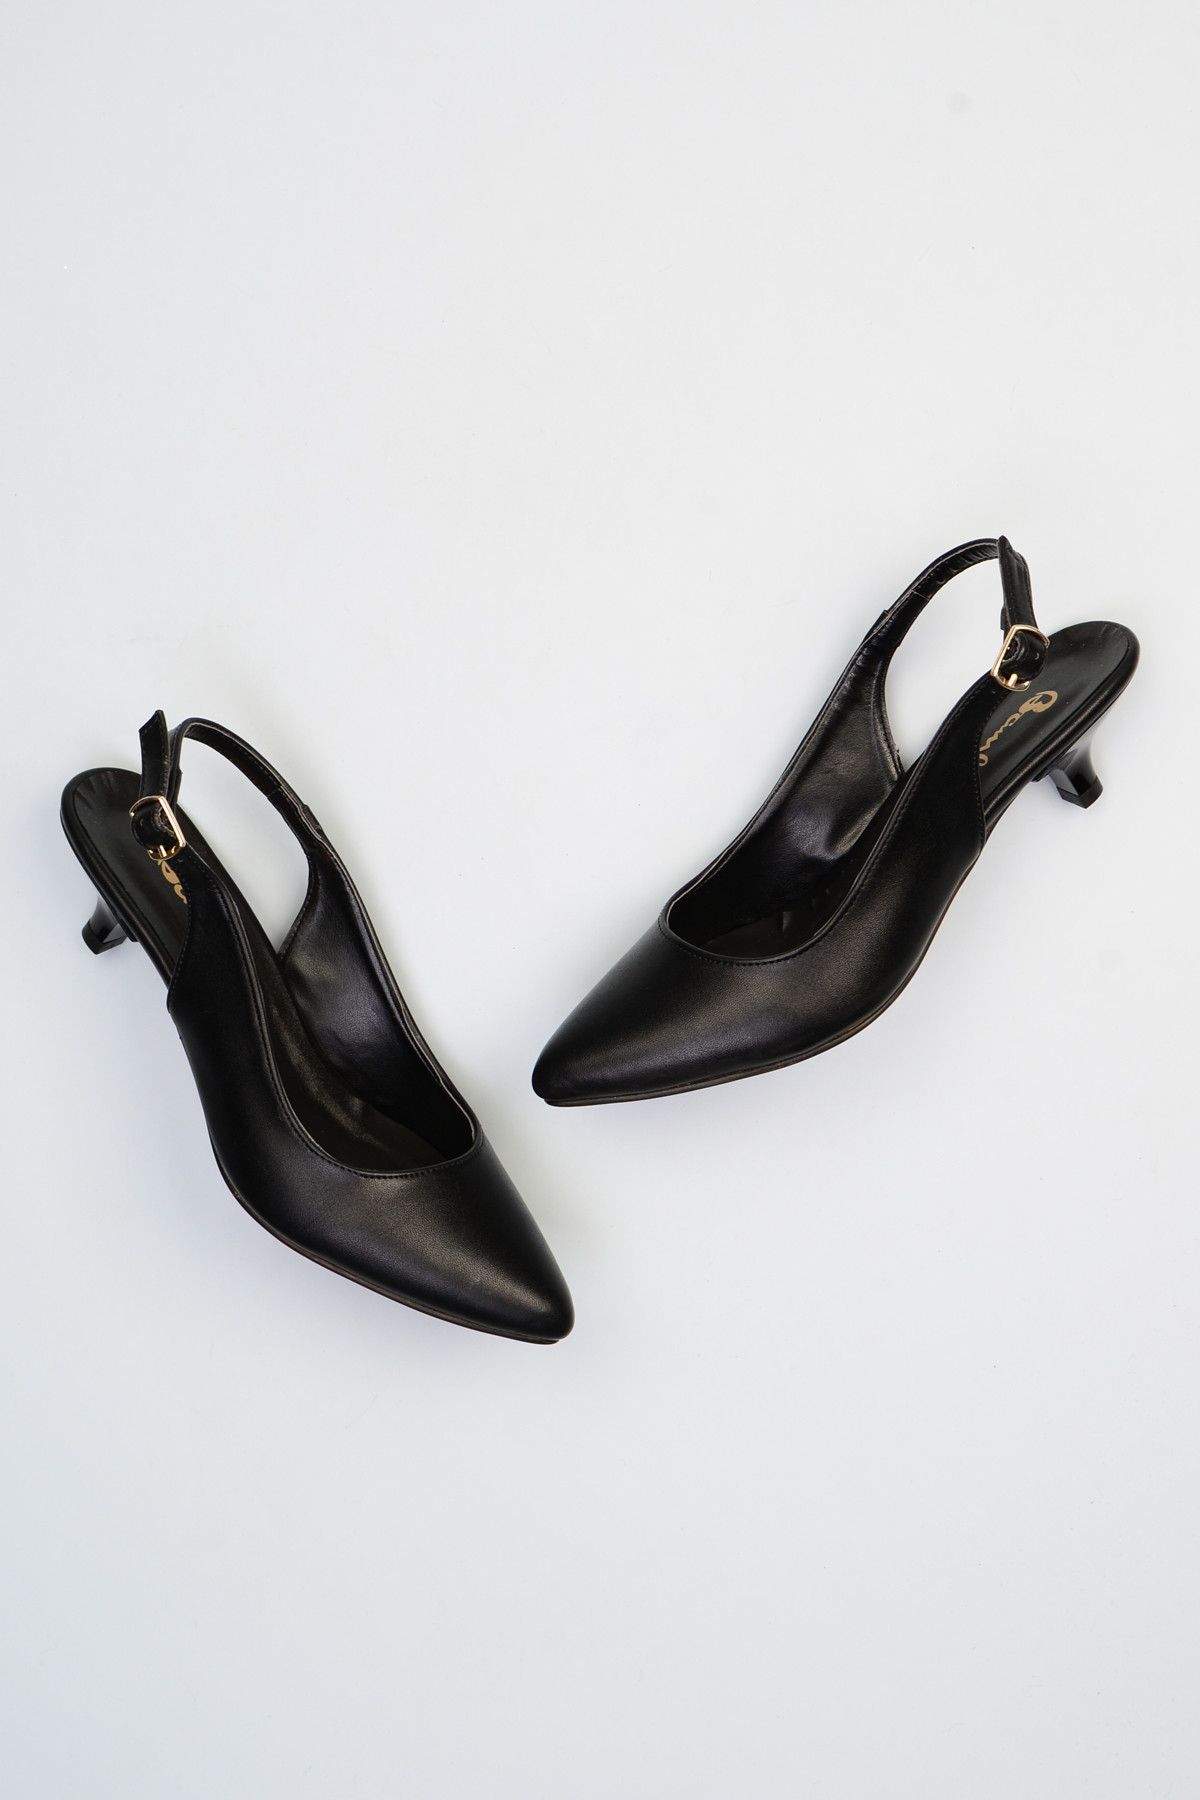 Bambi Siyah Kadın Topuklu Ayakkabı F0423010609